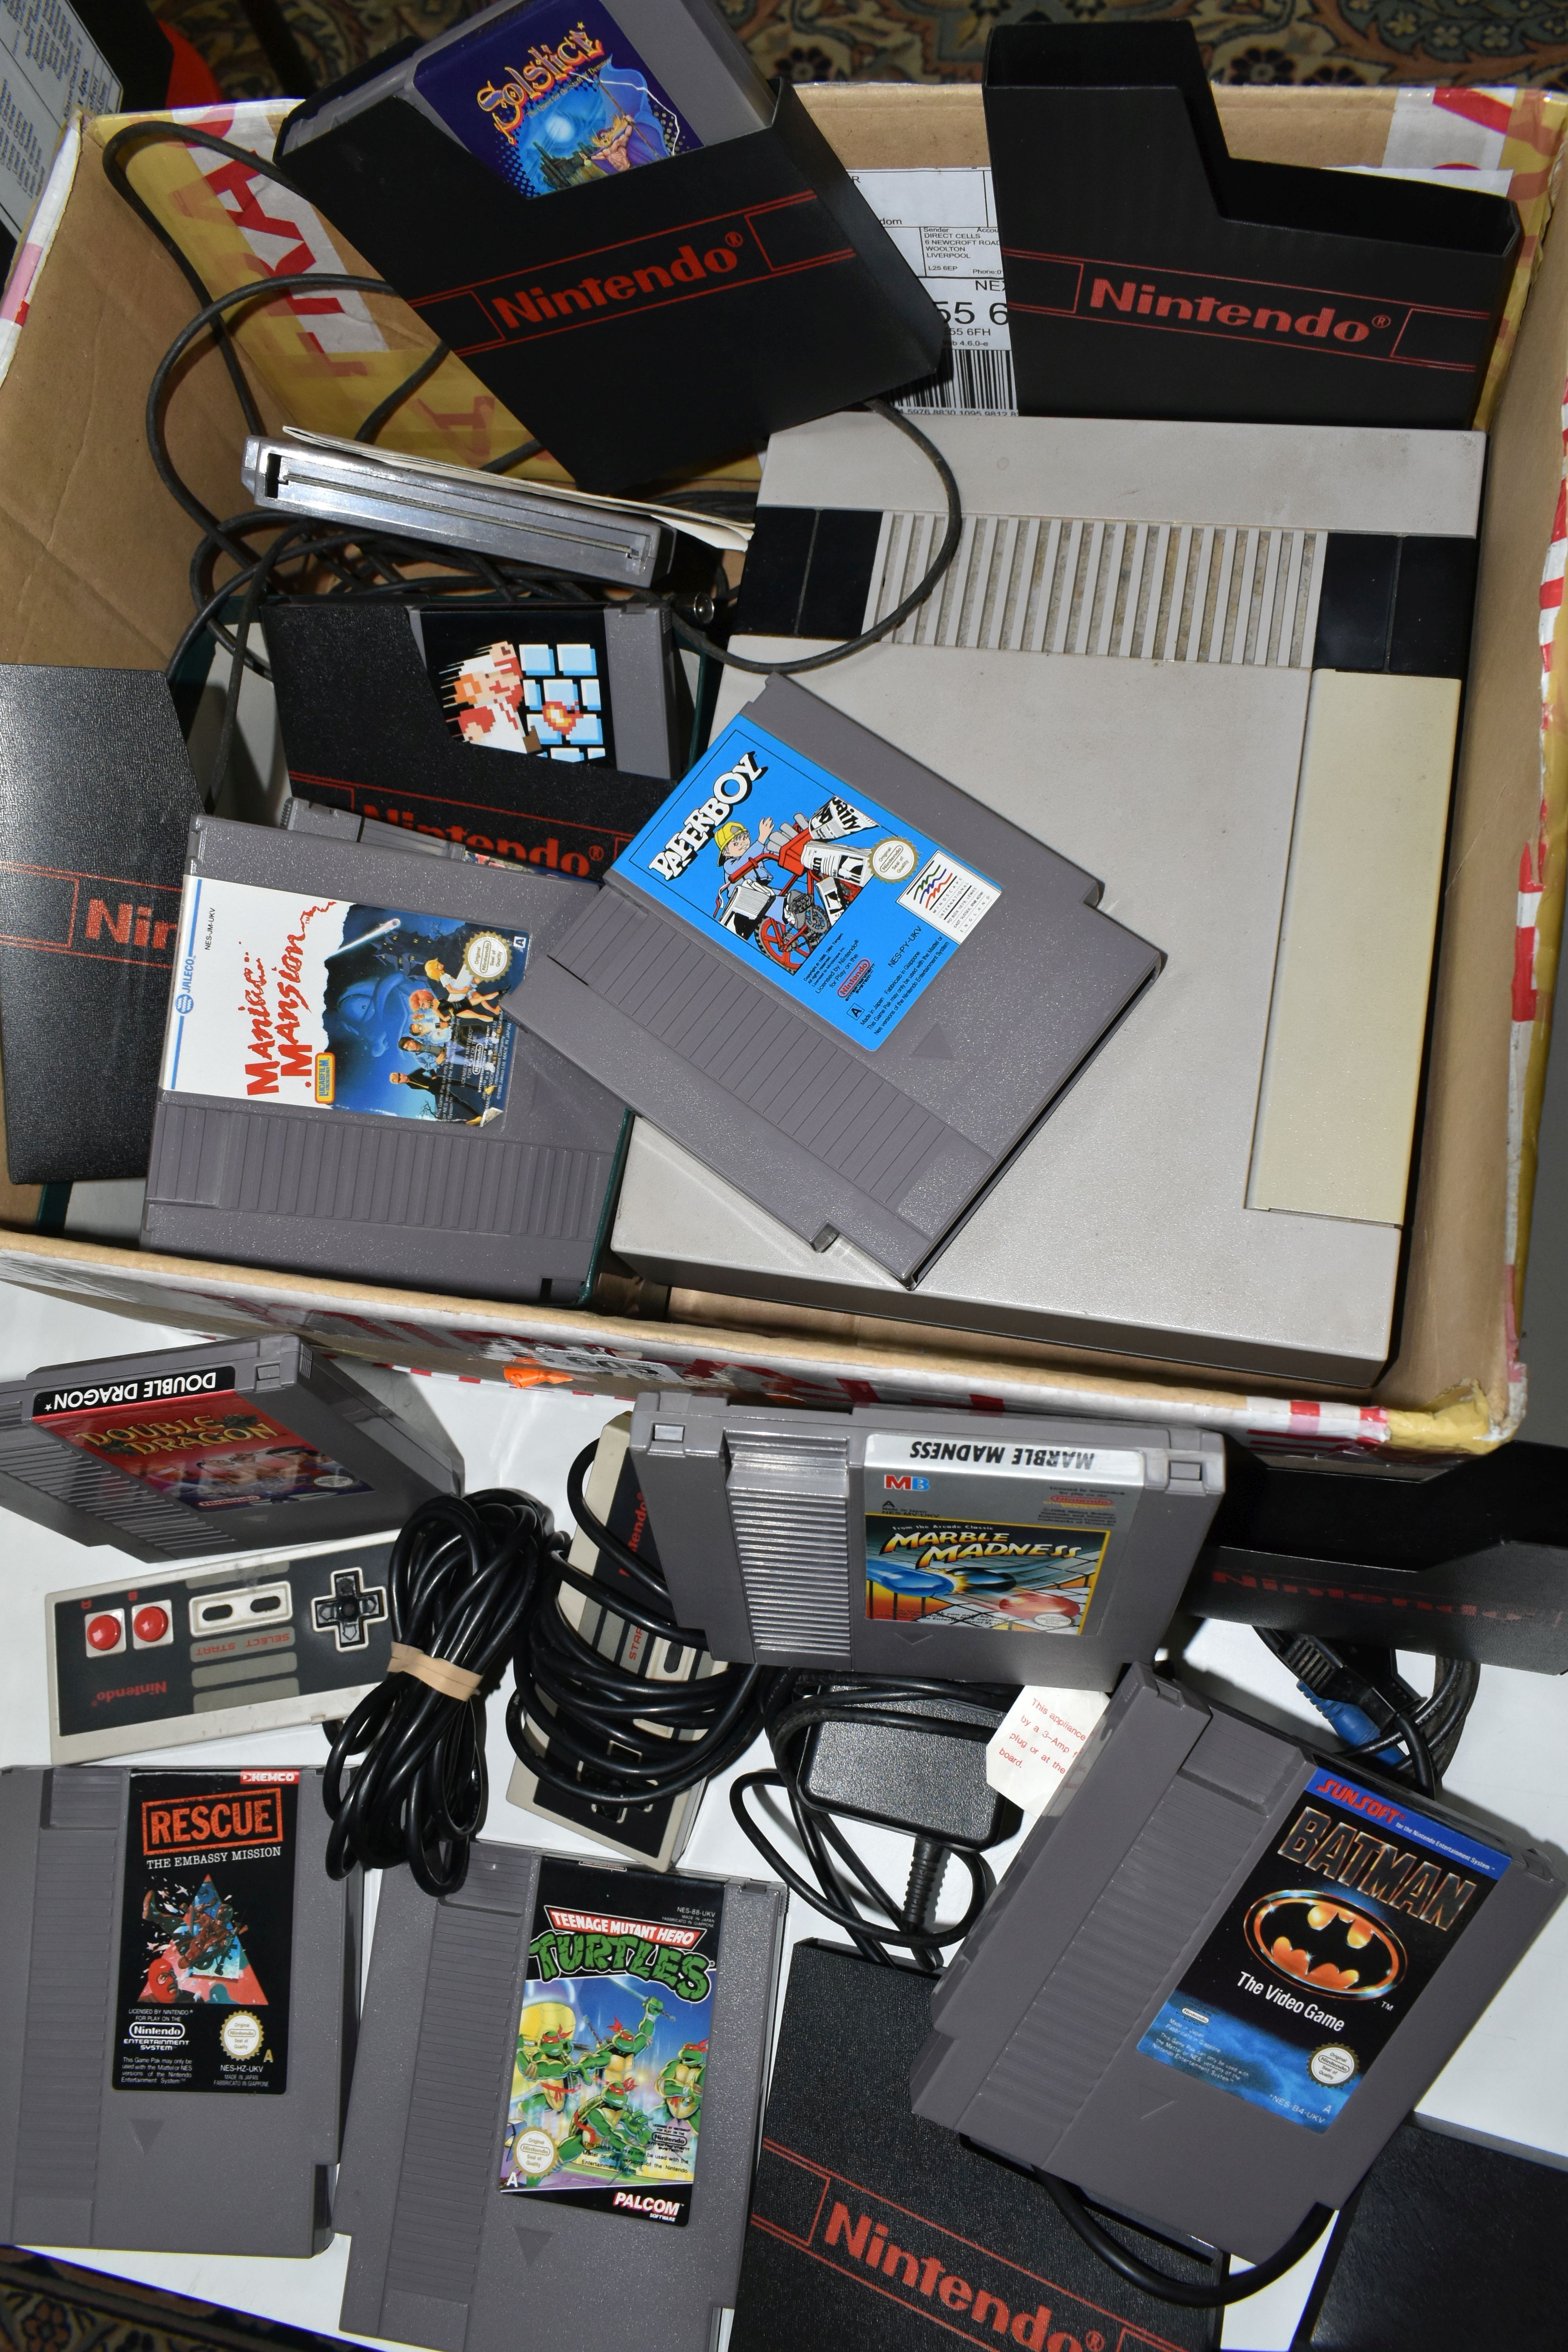 NINTENDO NES CONSOLE AND GAMES, includes Super Mario Bros, Super Mario Bros 3, Double Dragon, - Image 4 of 5